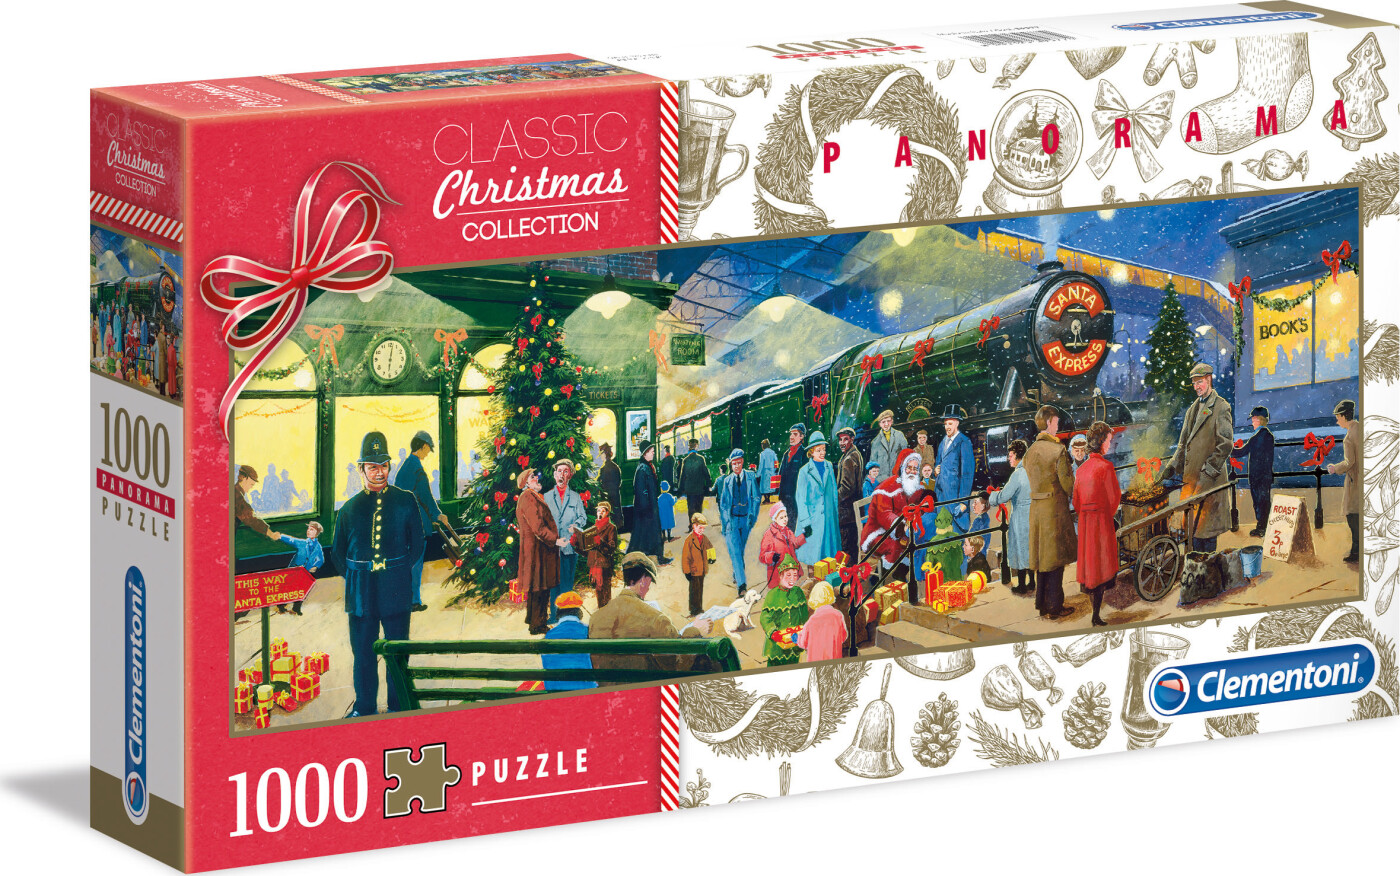 Se Clementoni Puslespil - Jul - Christmas Collection - 1000 Brikker hos Gucca.dk